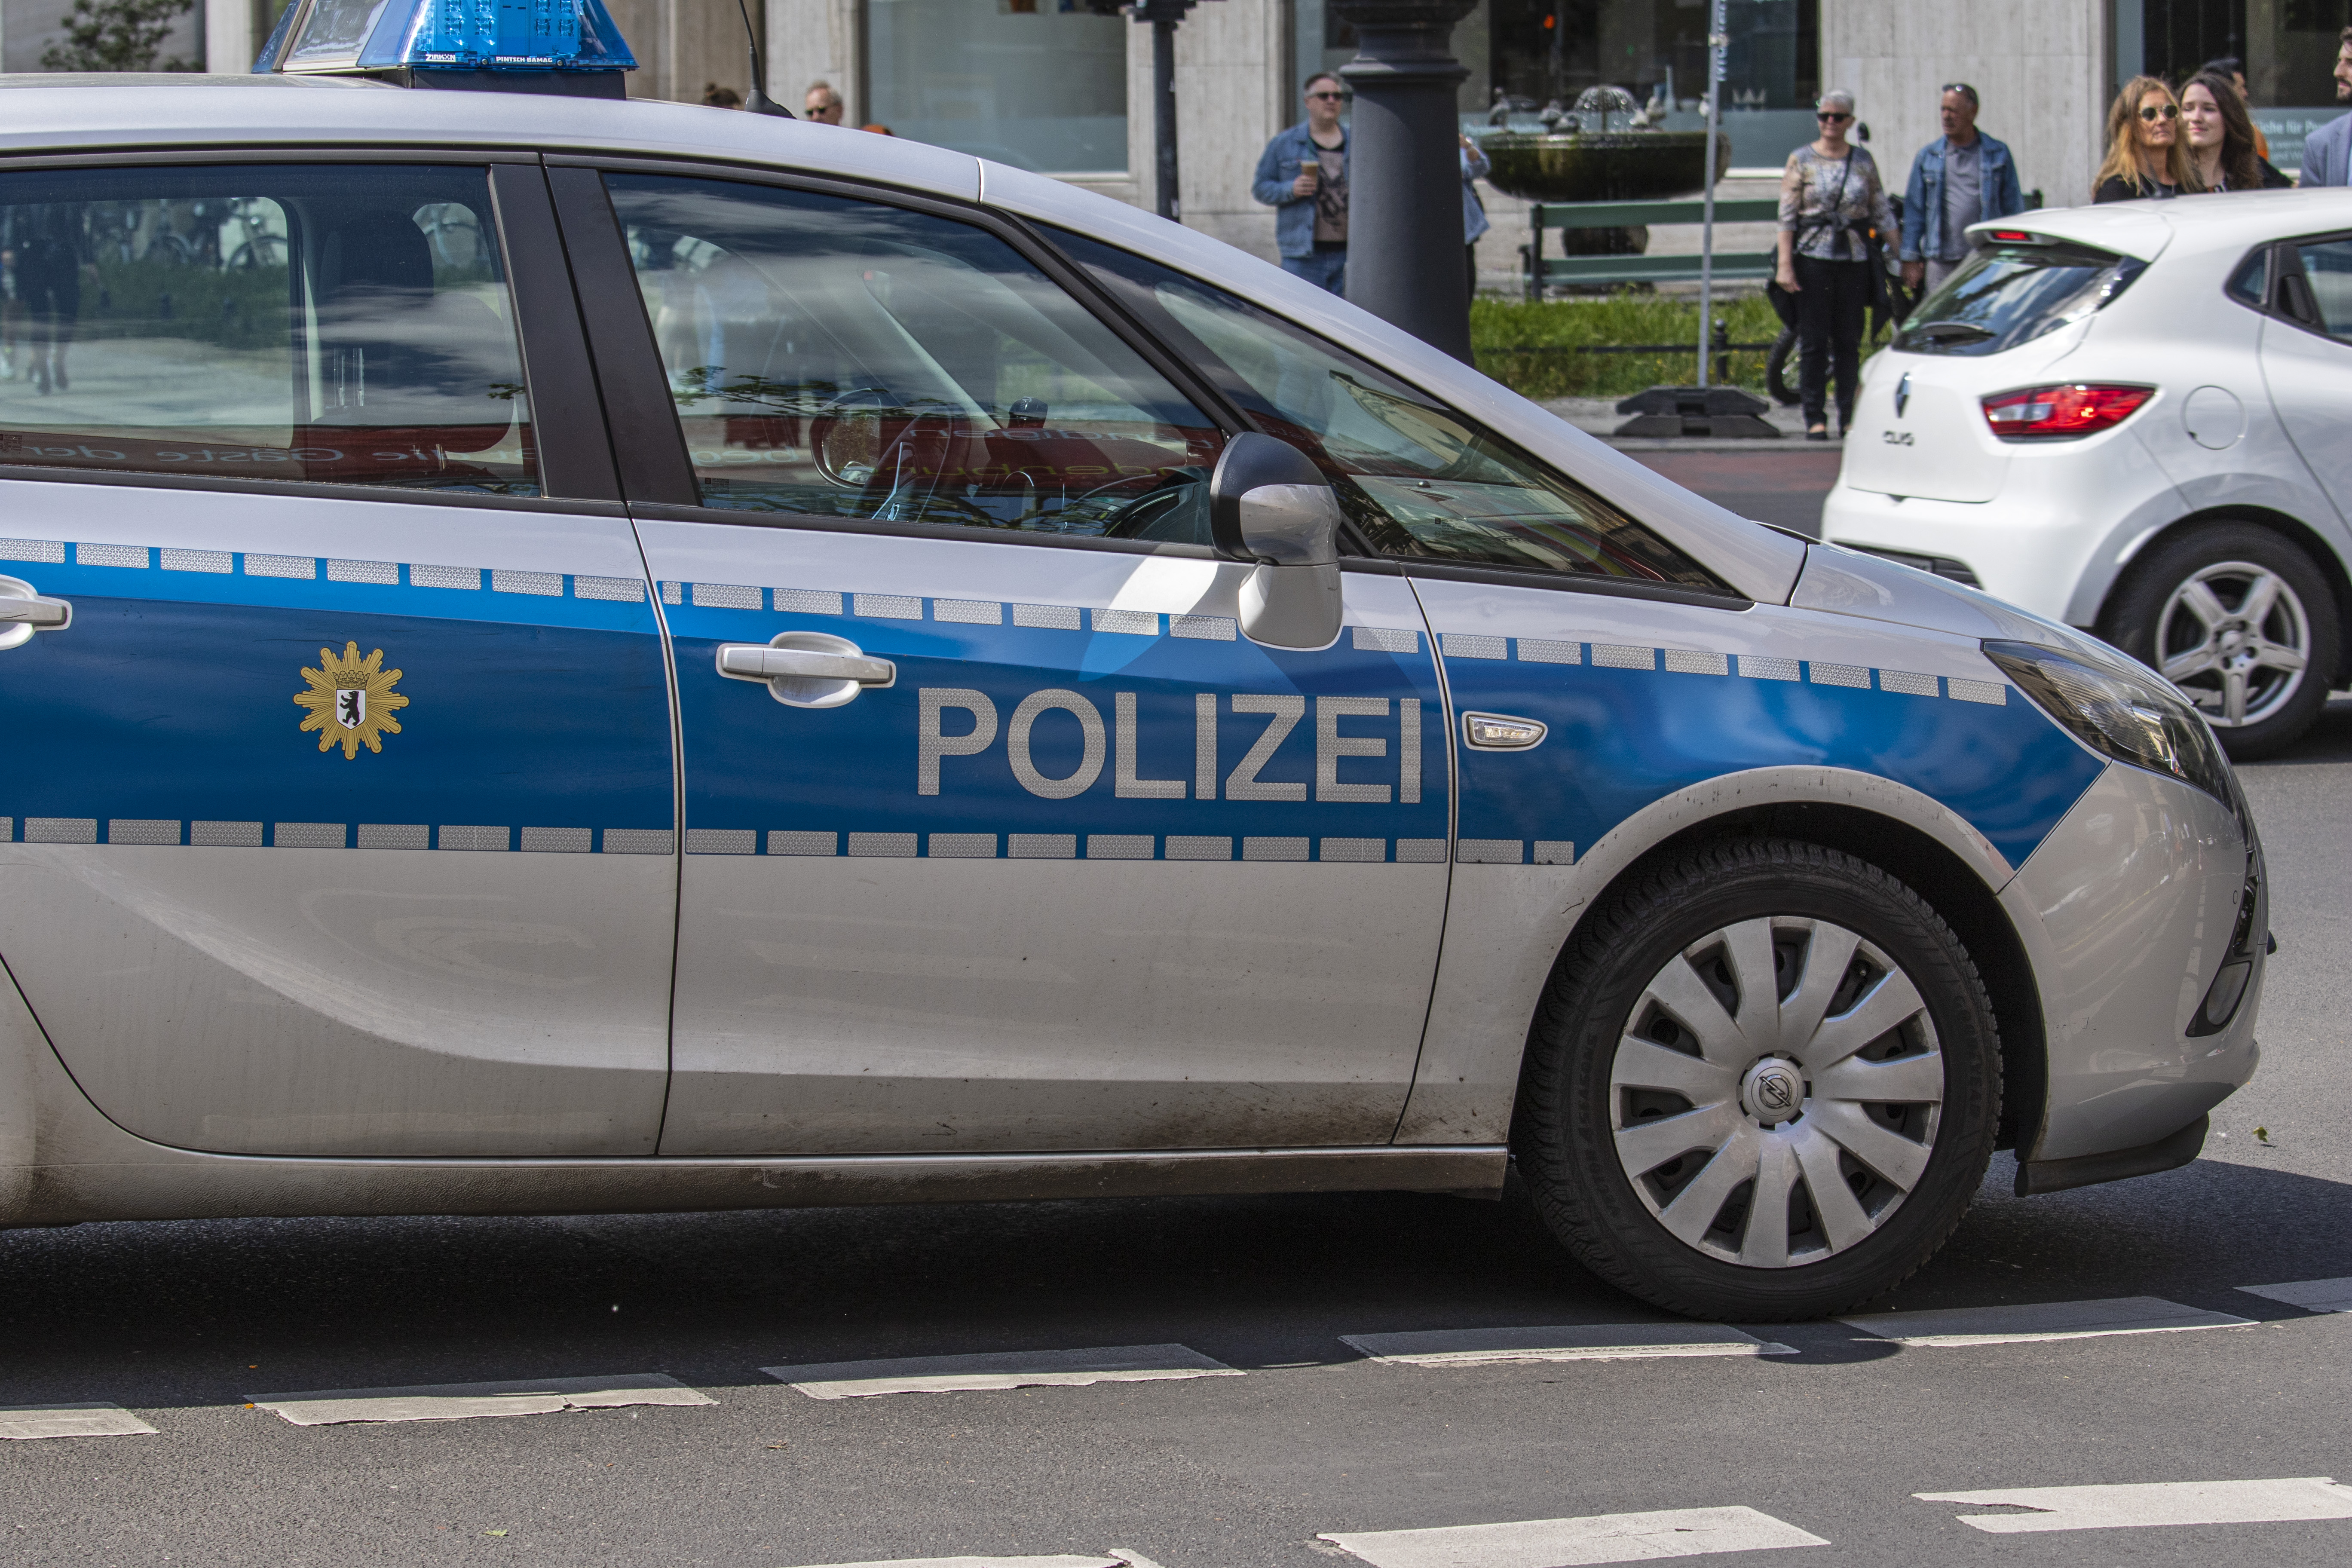 Gerichtsurteil Erwartet 50 Prozent Der Polizei Blitzer In Rheinland Pfalz Auf Dem Presseportal